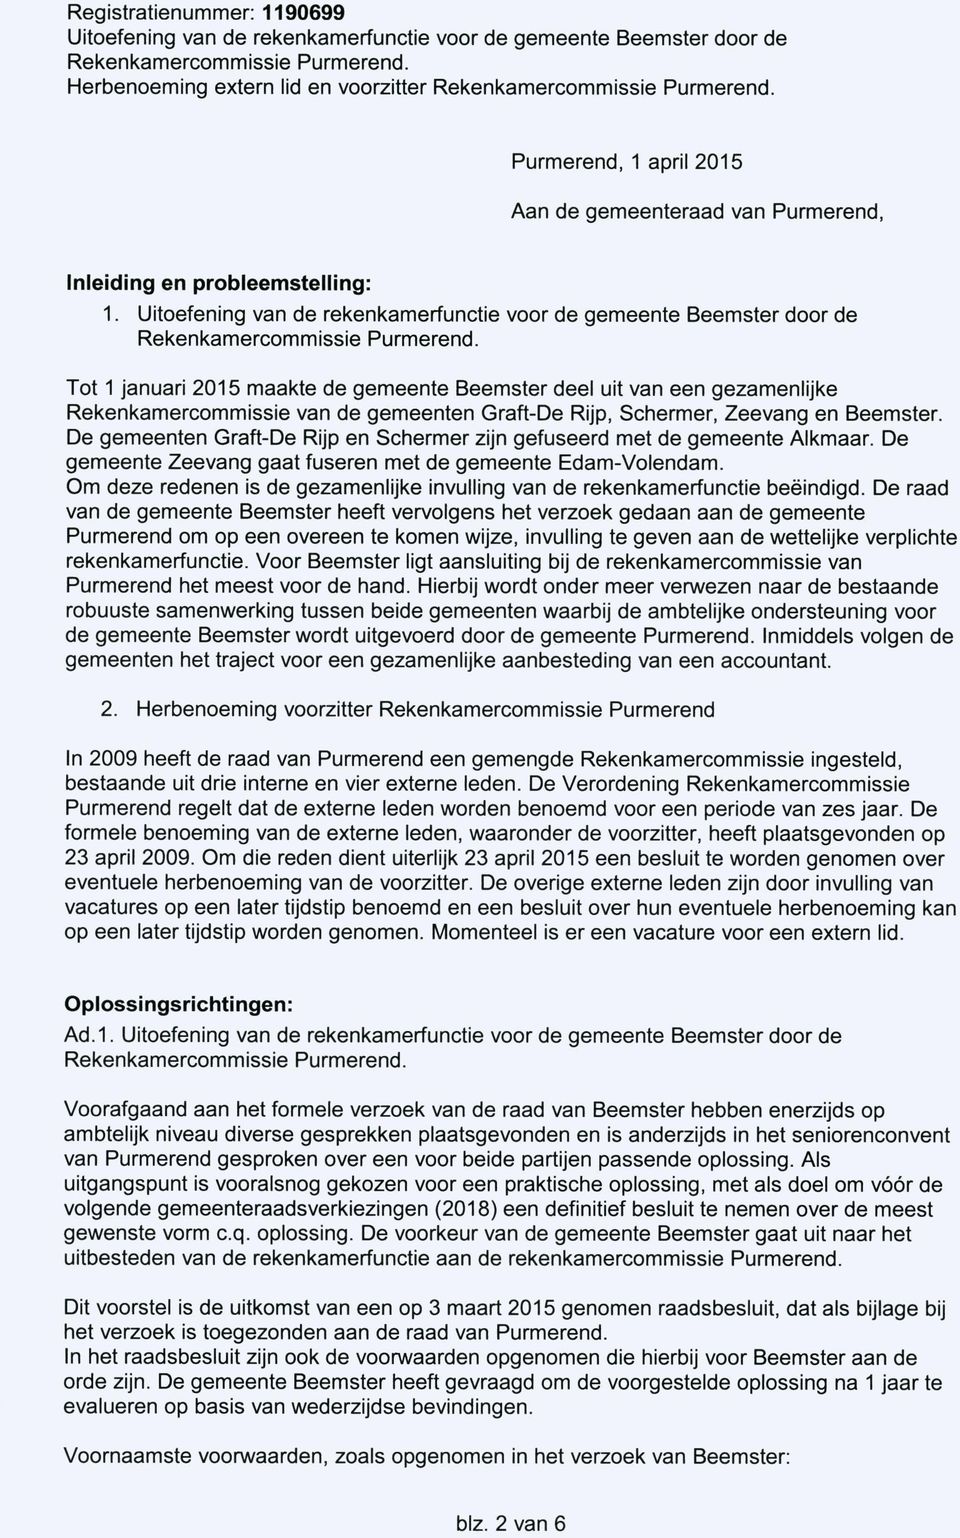 De gemeenten Graft-De Rijp en Schermer zijn gefuseerd met de gemeente Alkmaar. De gemeente Zeevang gaat fuseren met de gemeente Edam-Volendam.